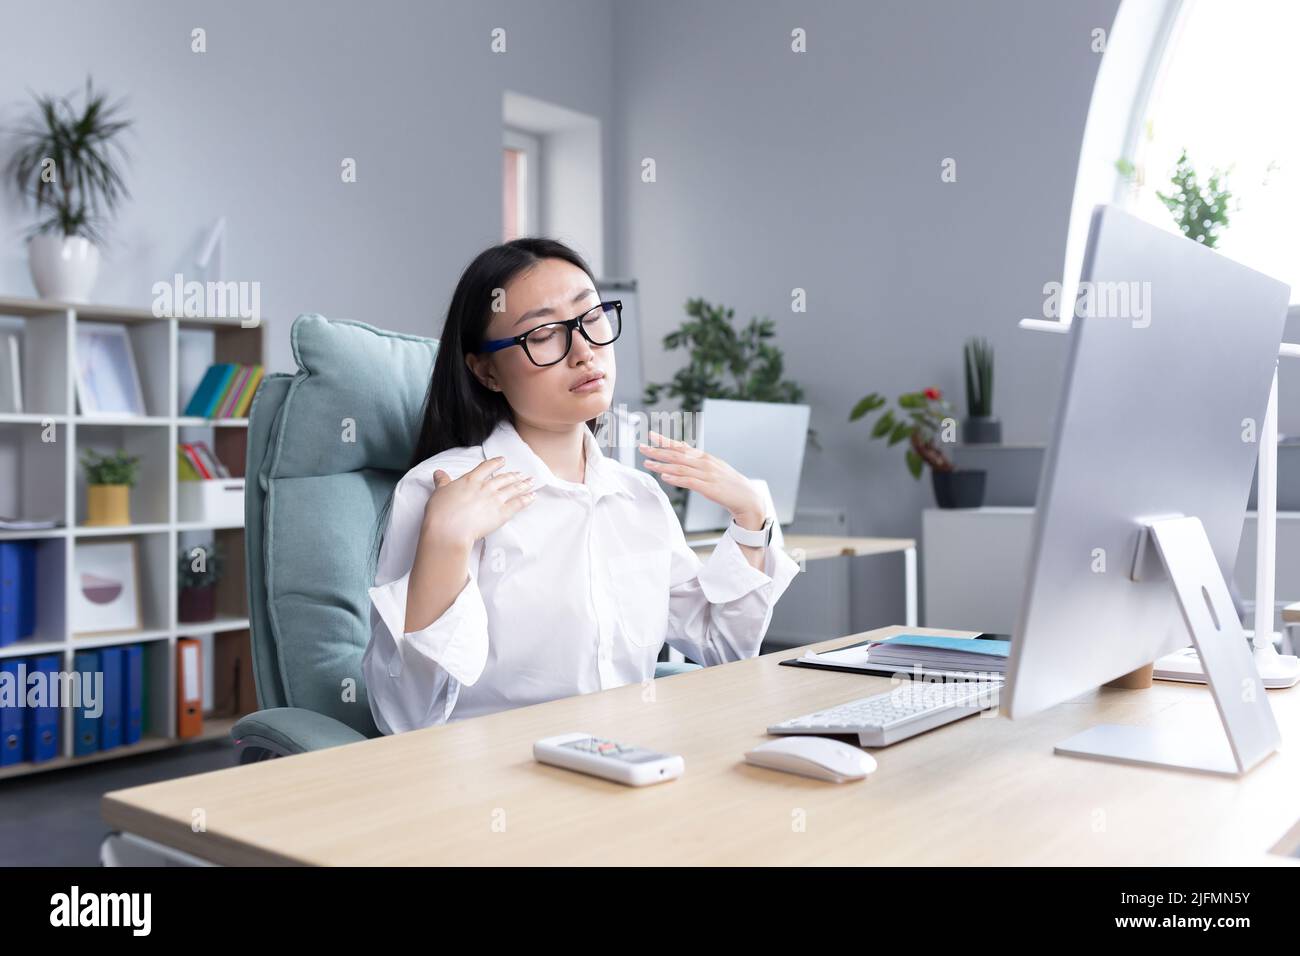 Calore in ufficio, donna asiatica che cerca di rinfrescarsi, donna d'affari che lavora al computer, agitando le mani per raffreddarsi. Foto Stock